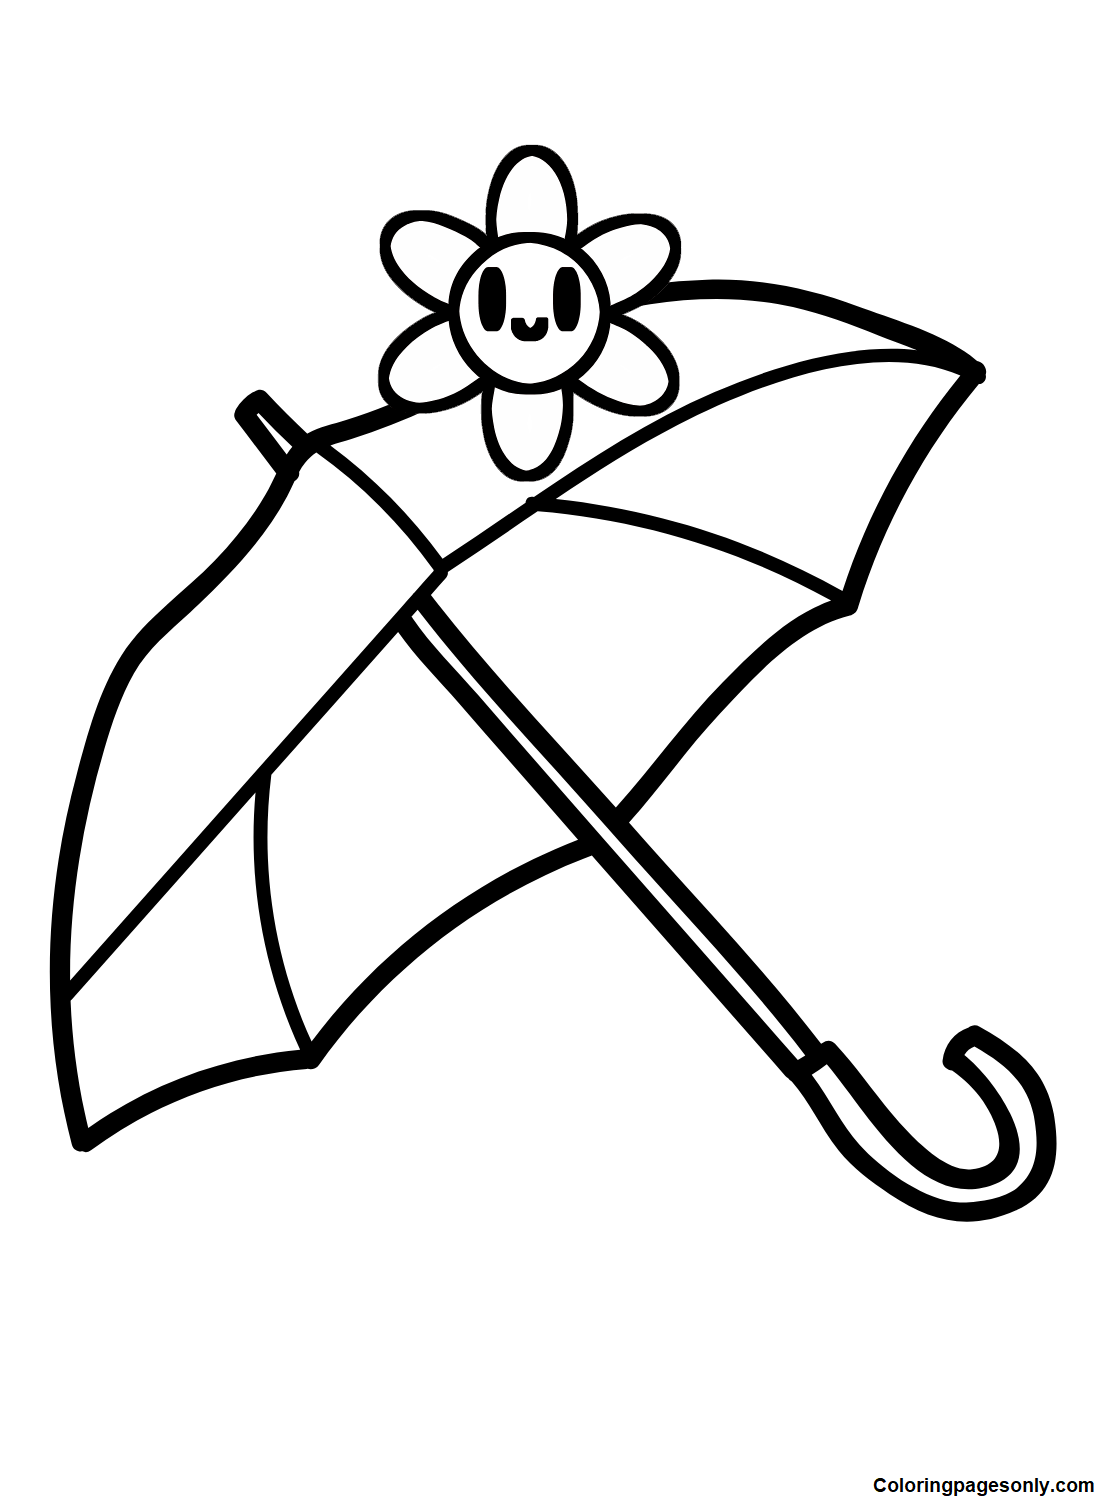 Guarda-chuva fofo da Umbrella